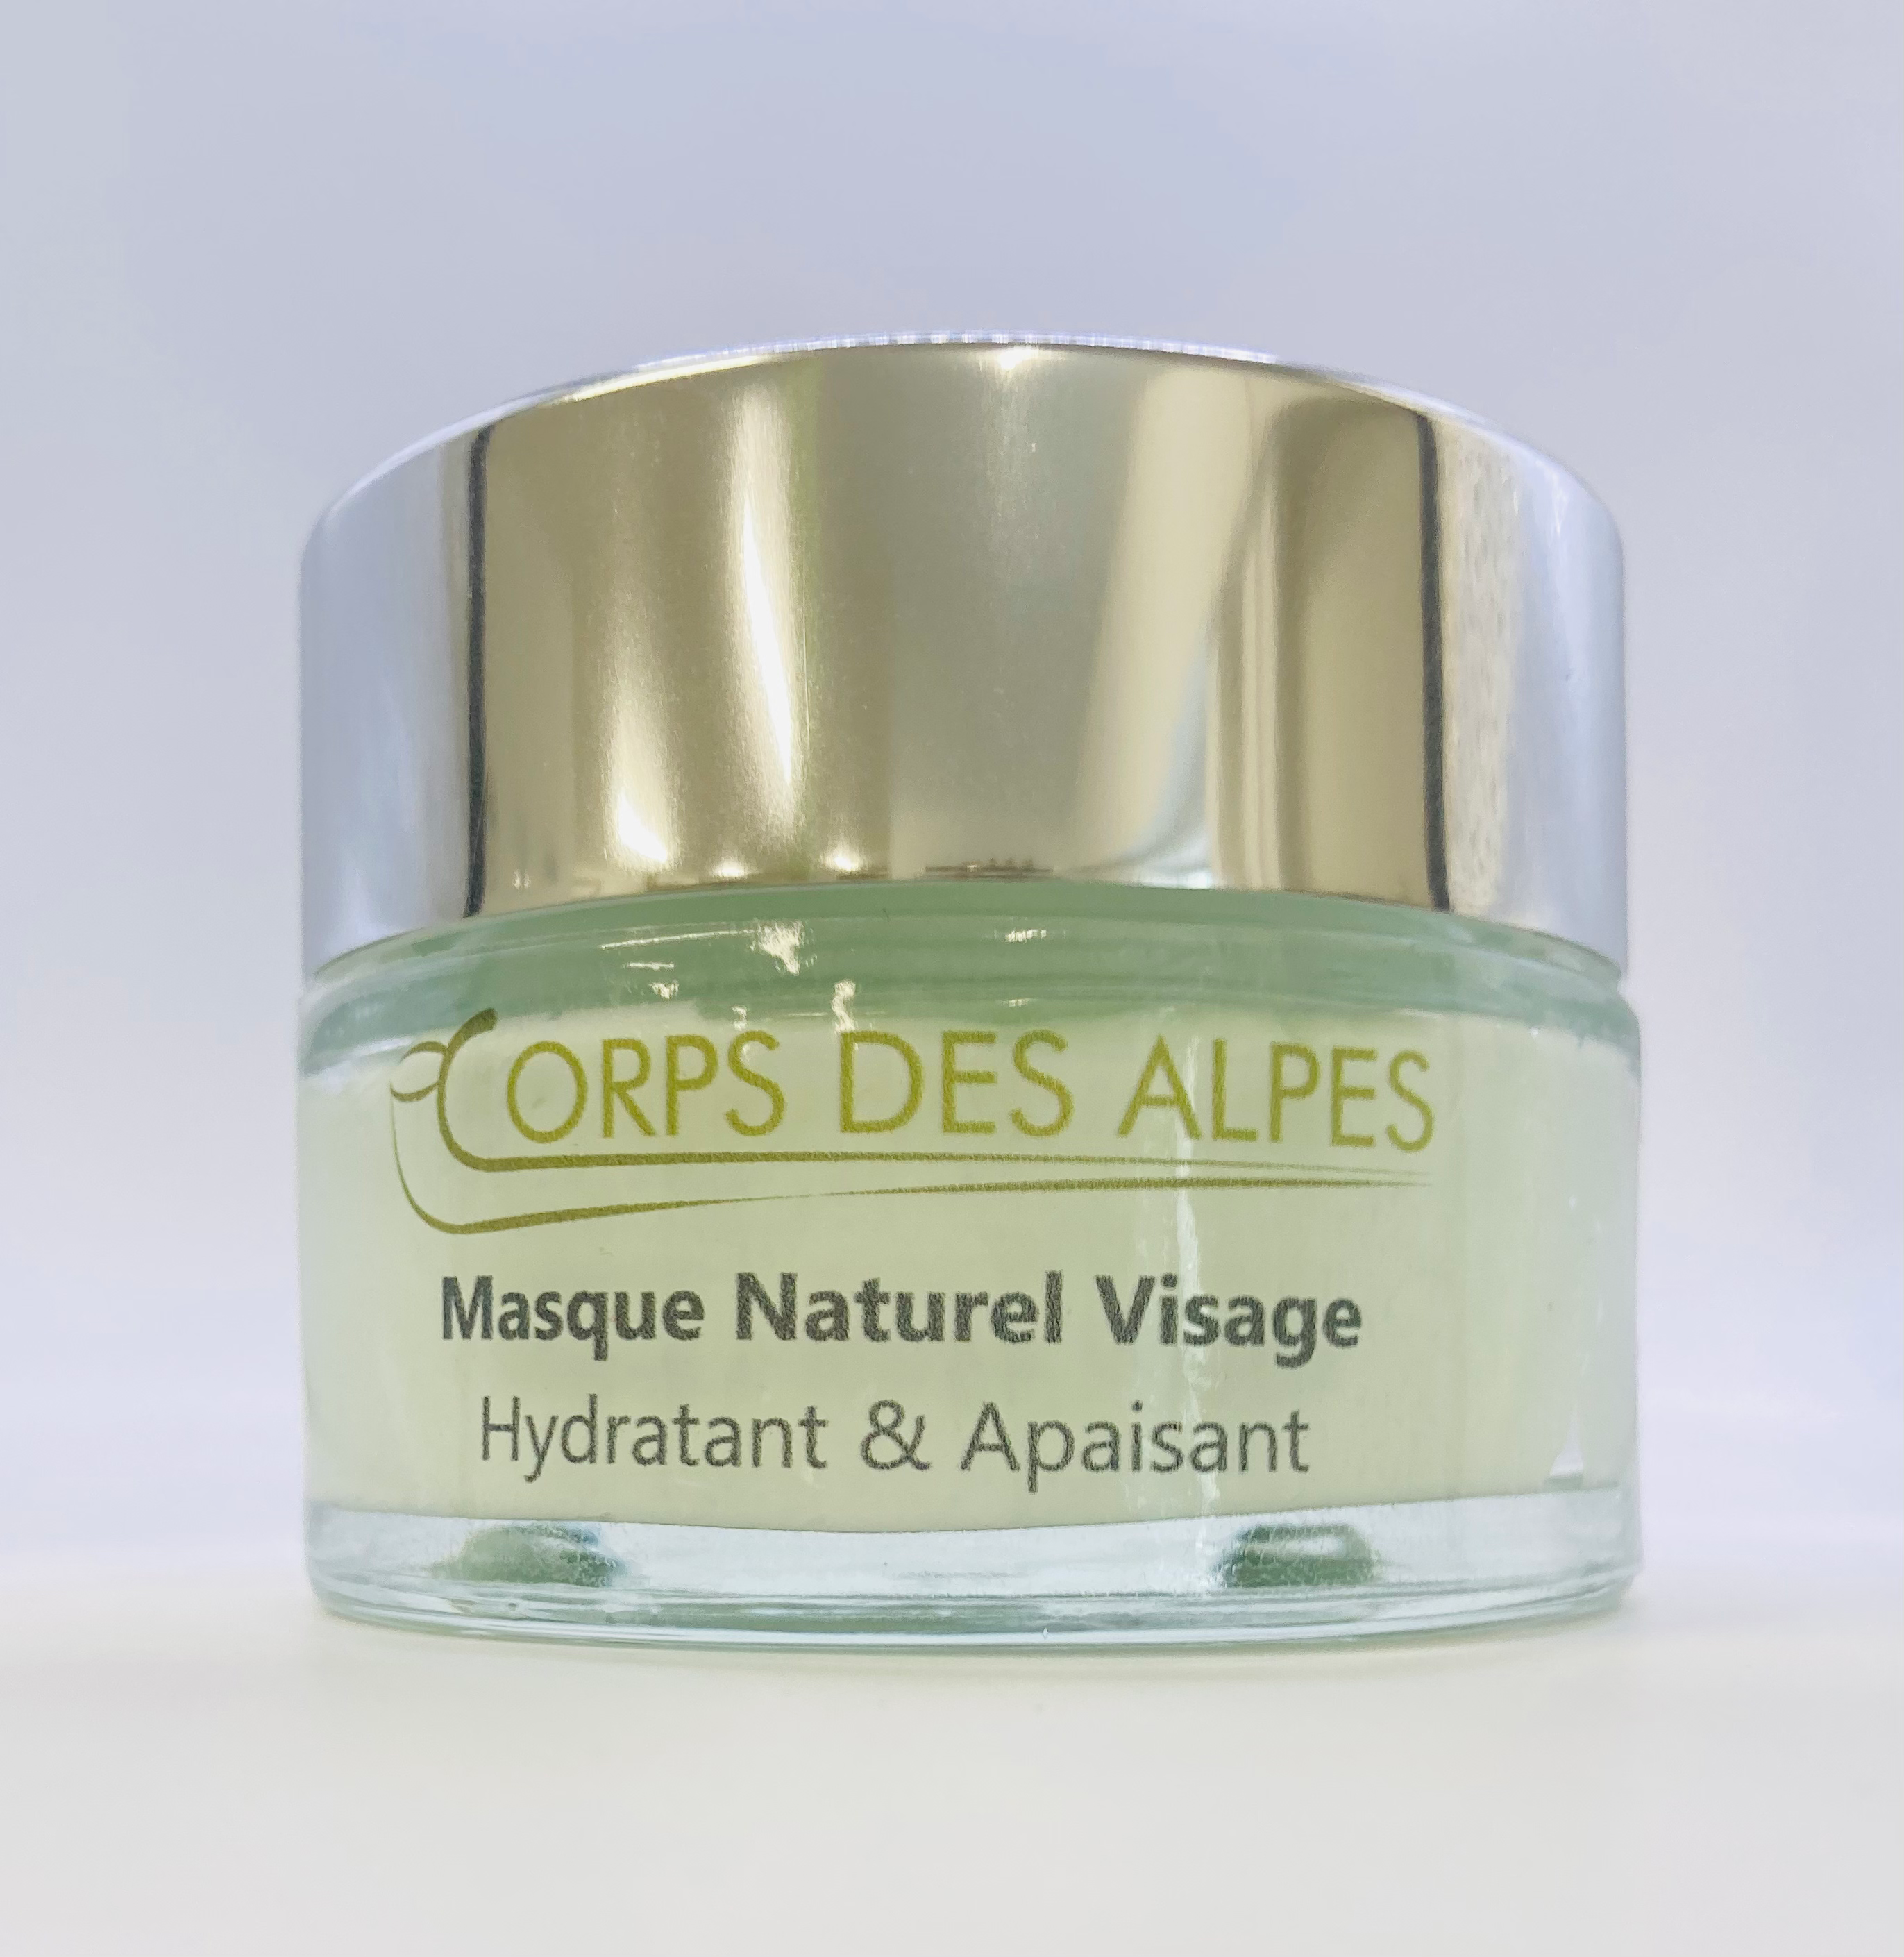 Natürliche Gesichtsmaske, Corps des Alpes Cosmétiques Naturels, La Verrerie, image 1 | Mimelis